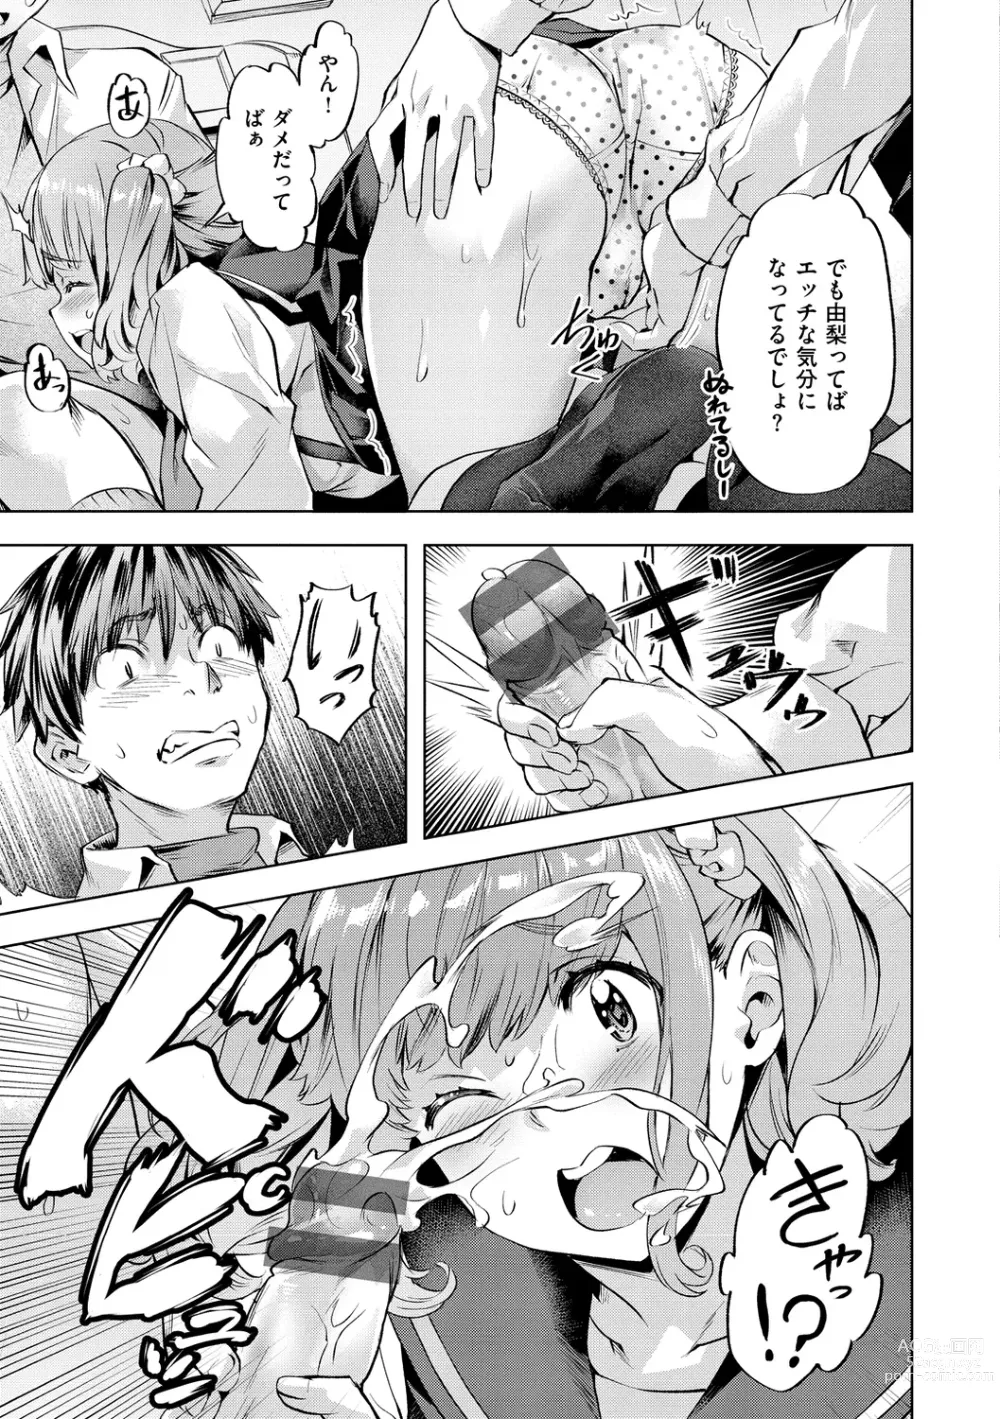 Page 27 of manga Binetsu Emotion - Sensual Emotion